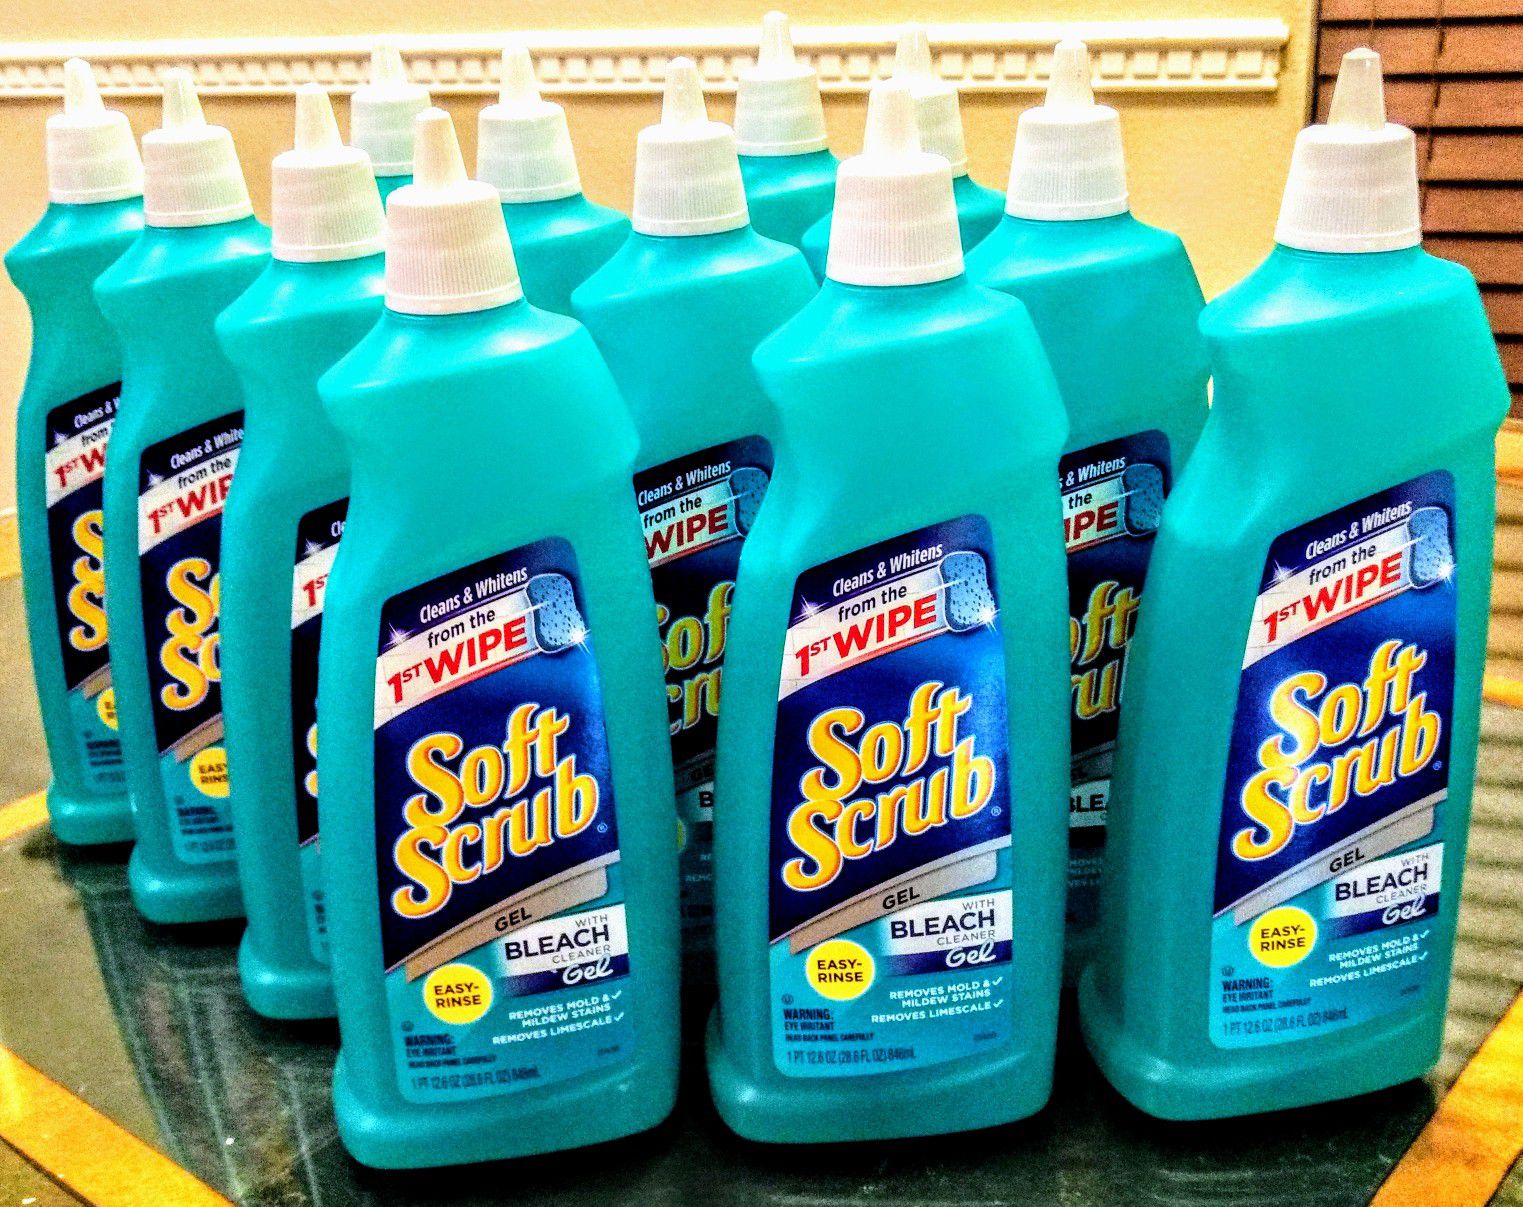 Soft Scrub with Bleach Cleaner Gel, 28.6 Fluid Ounces ($2)